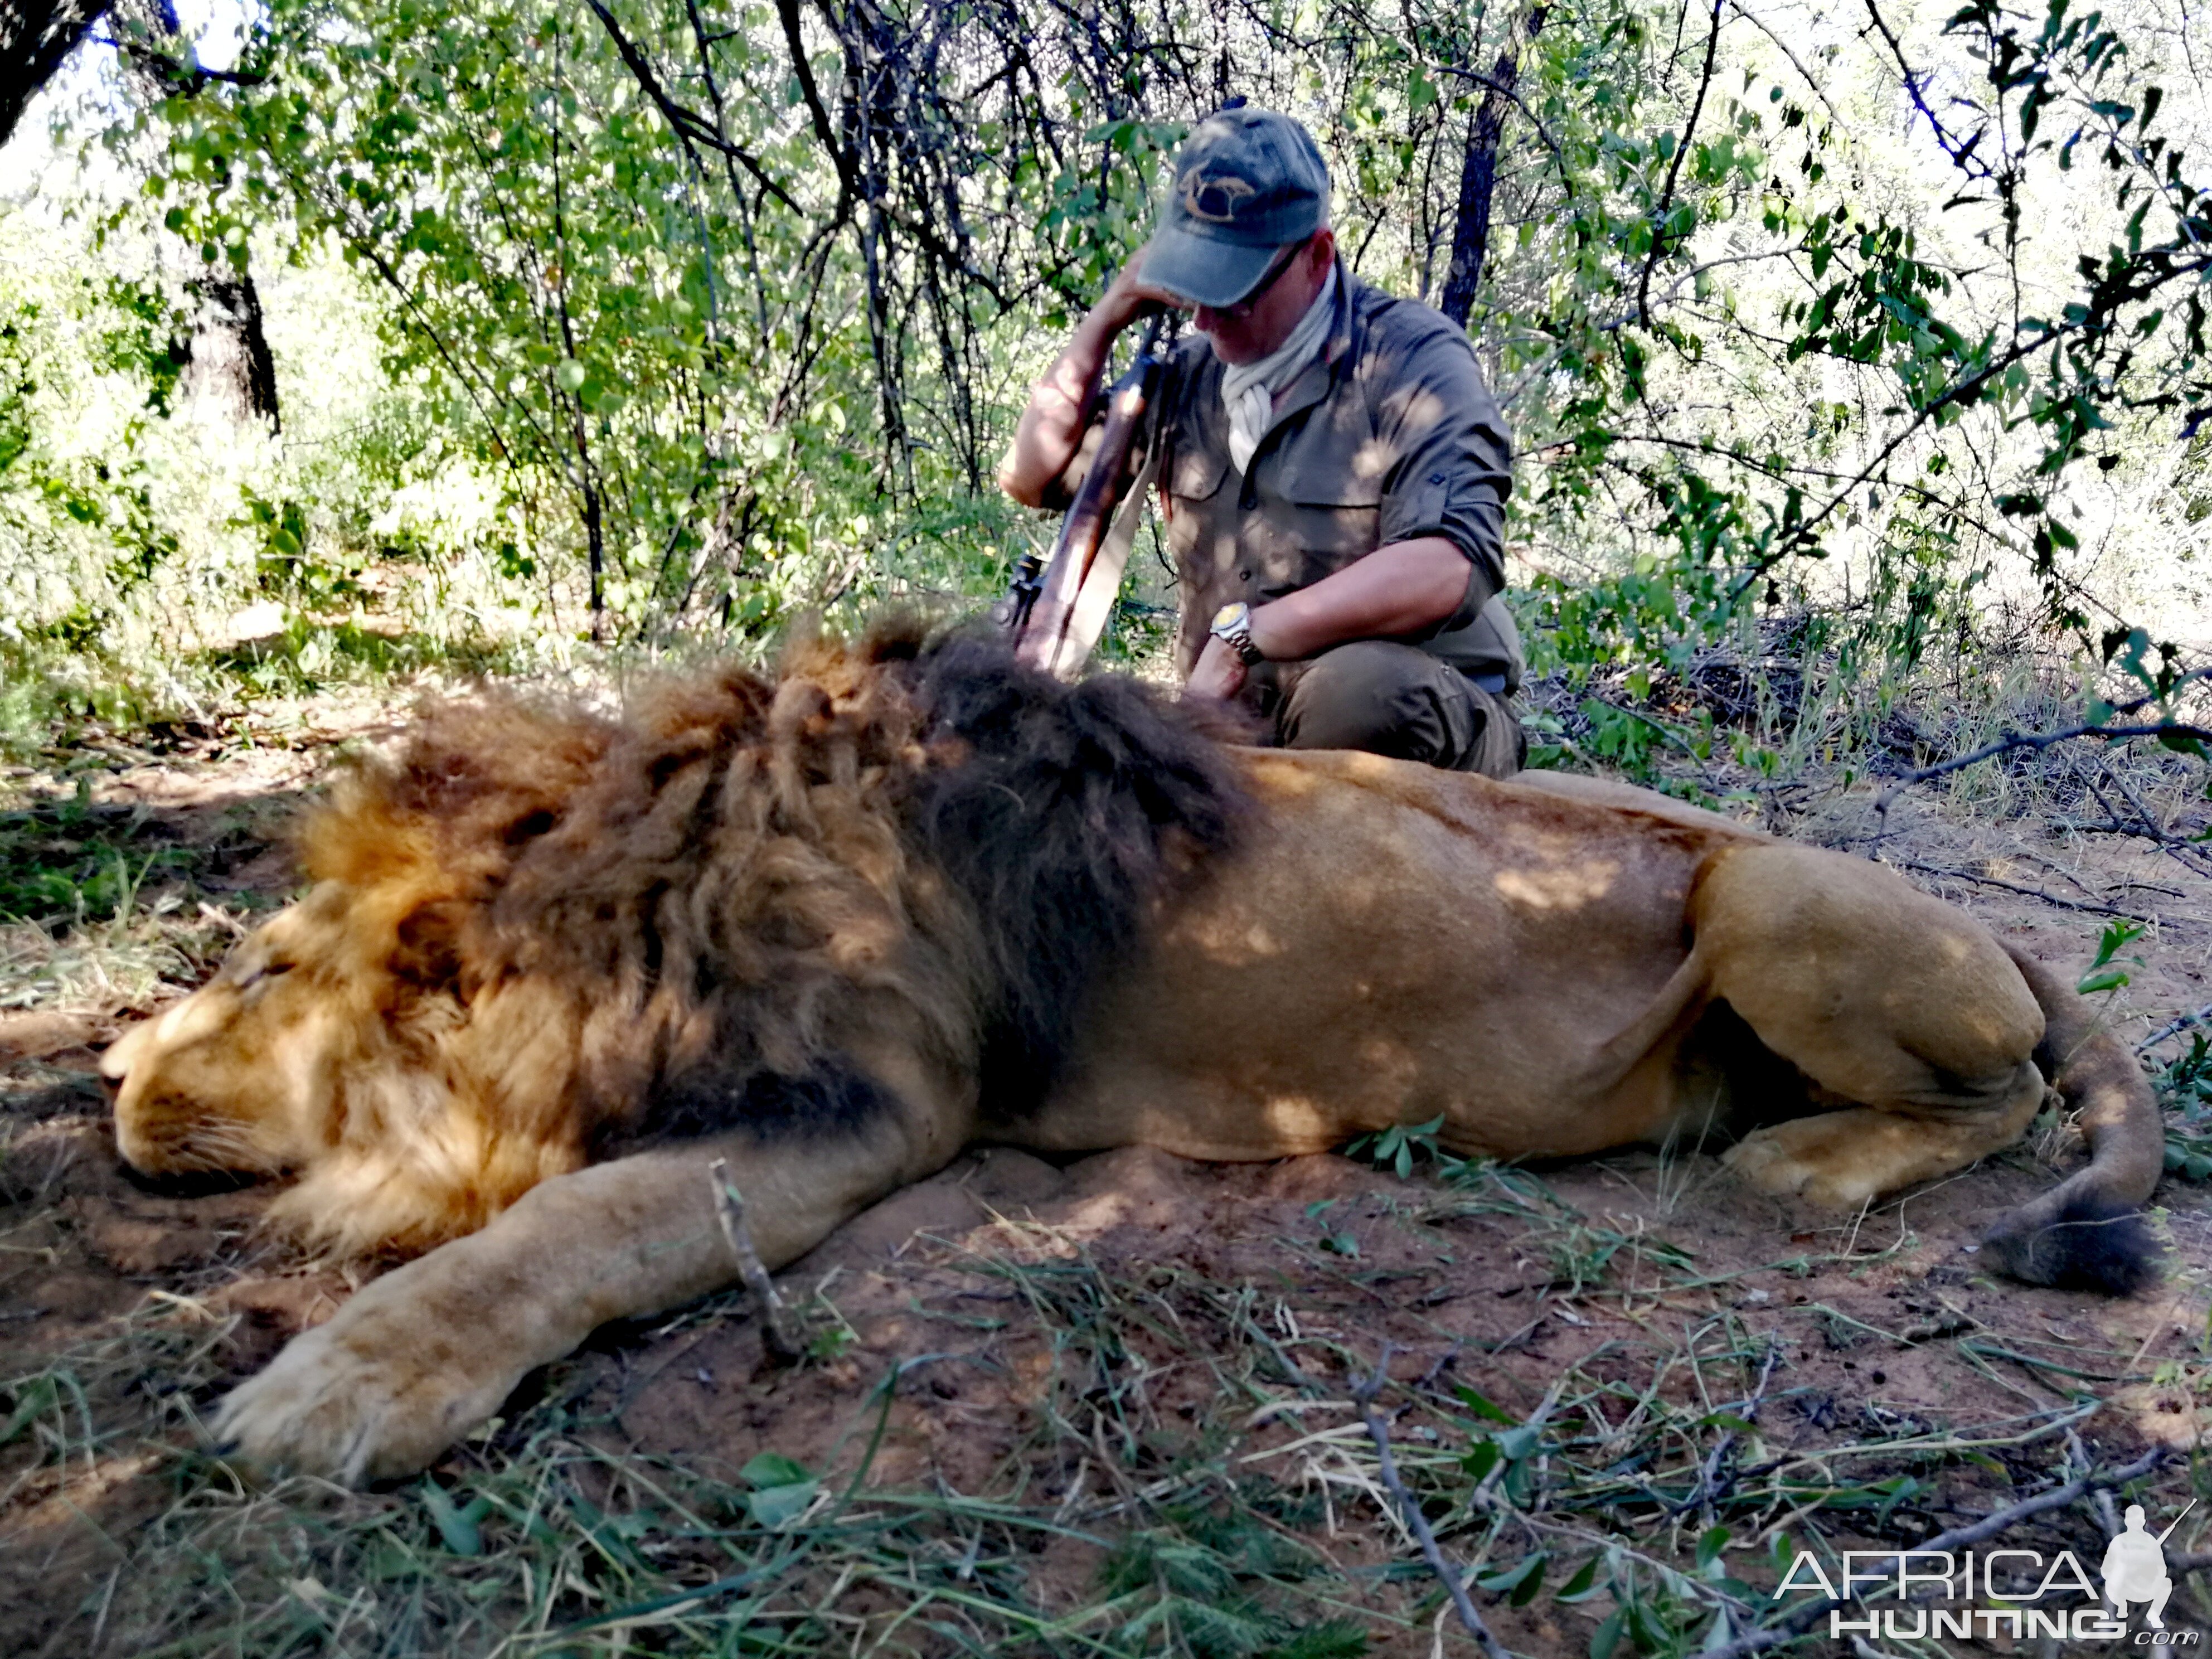 hunting safari in africa